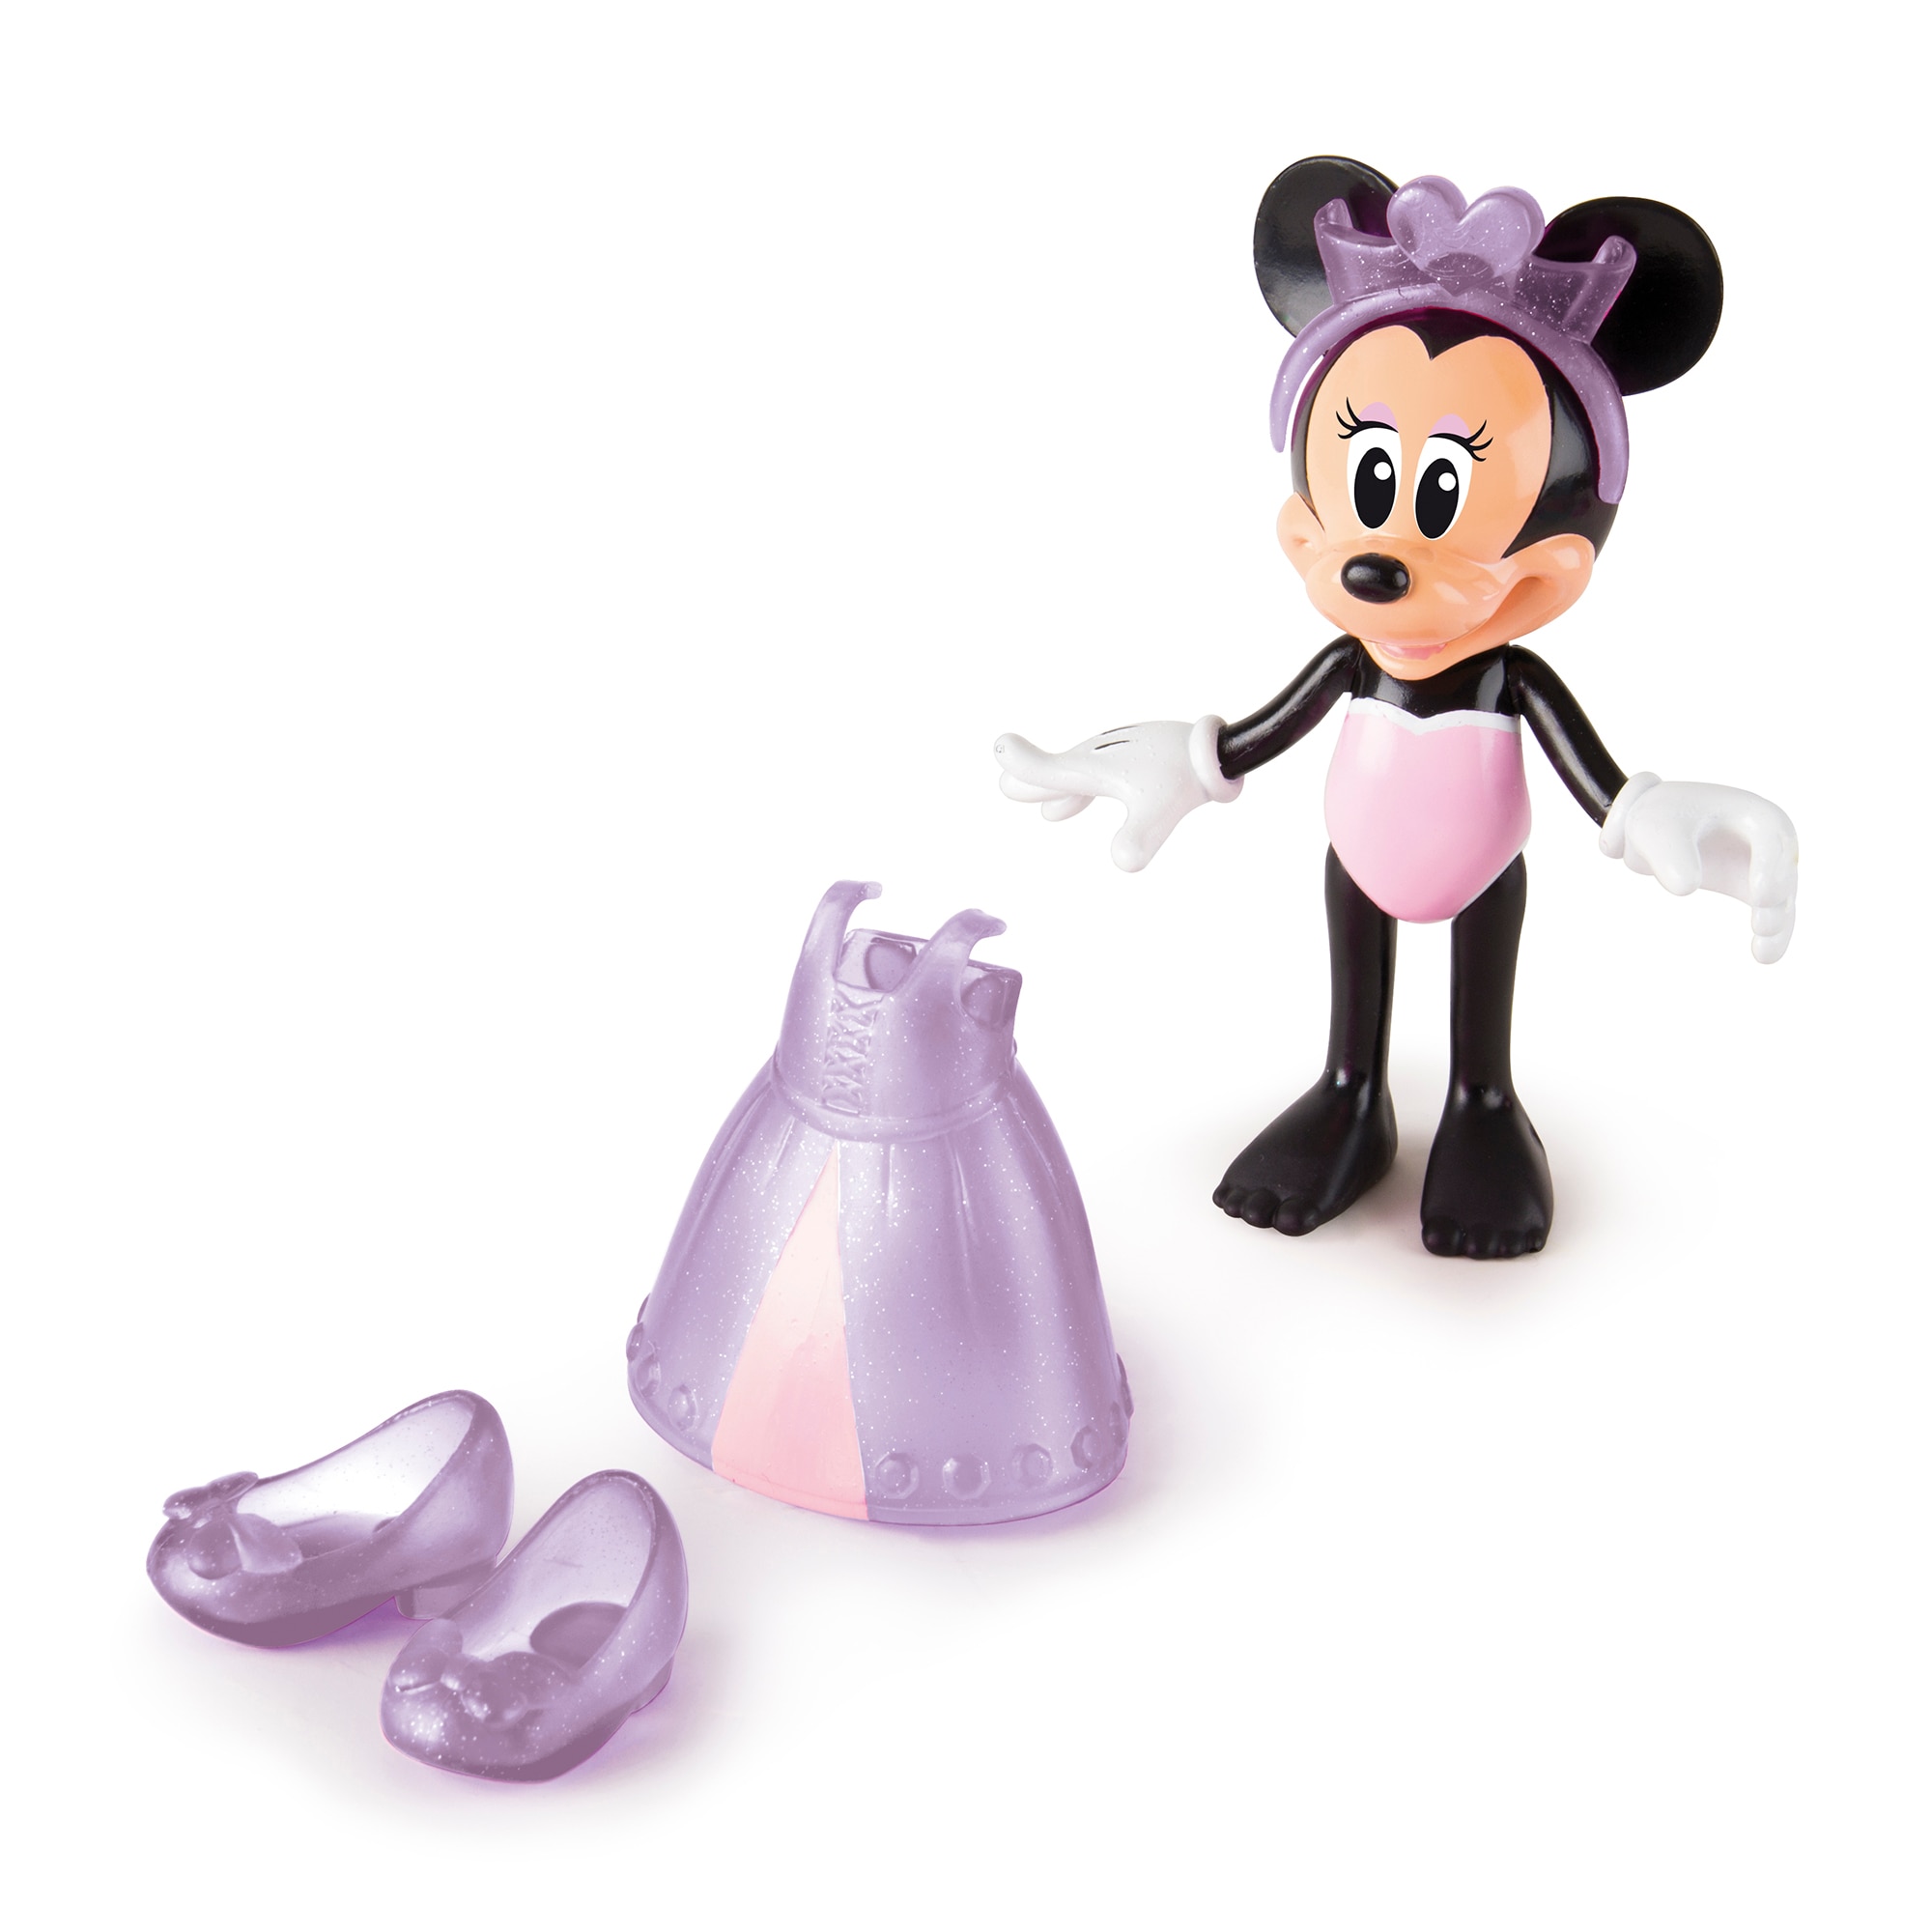 Set de joaca IMC Disney Minnie Mouse, cu accesorii de frumusete 